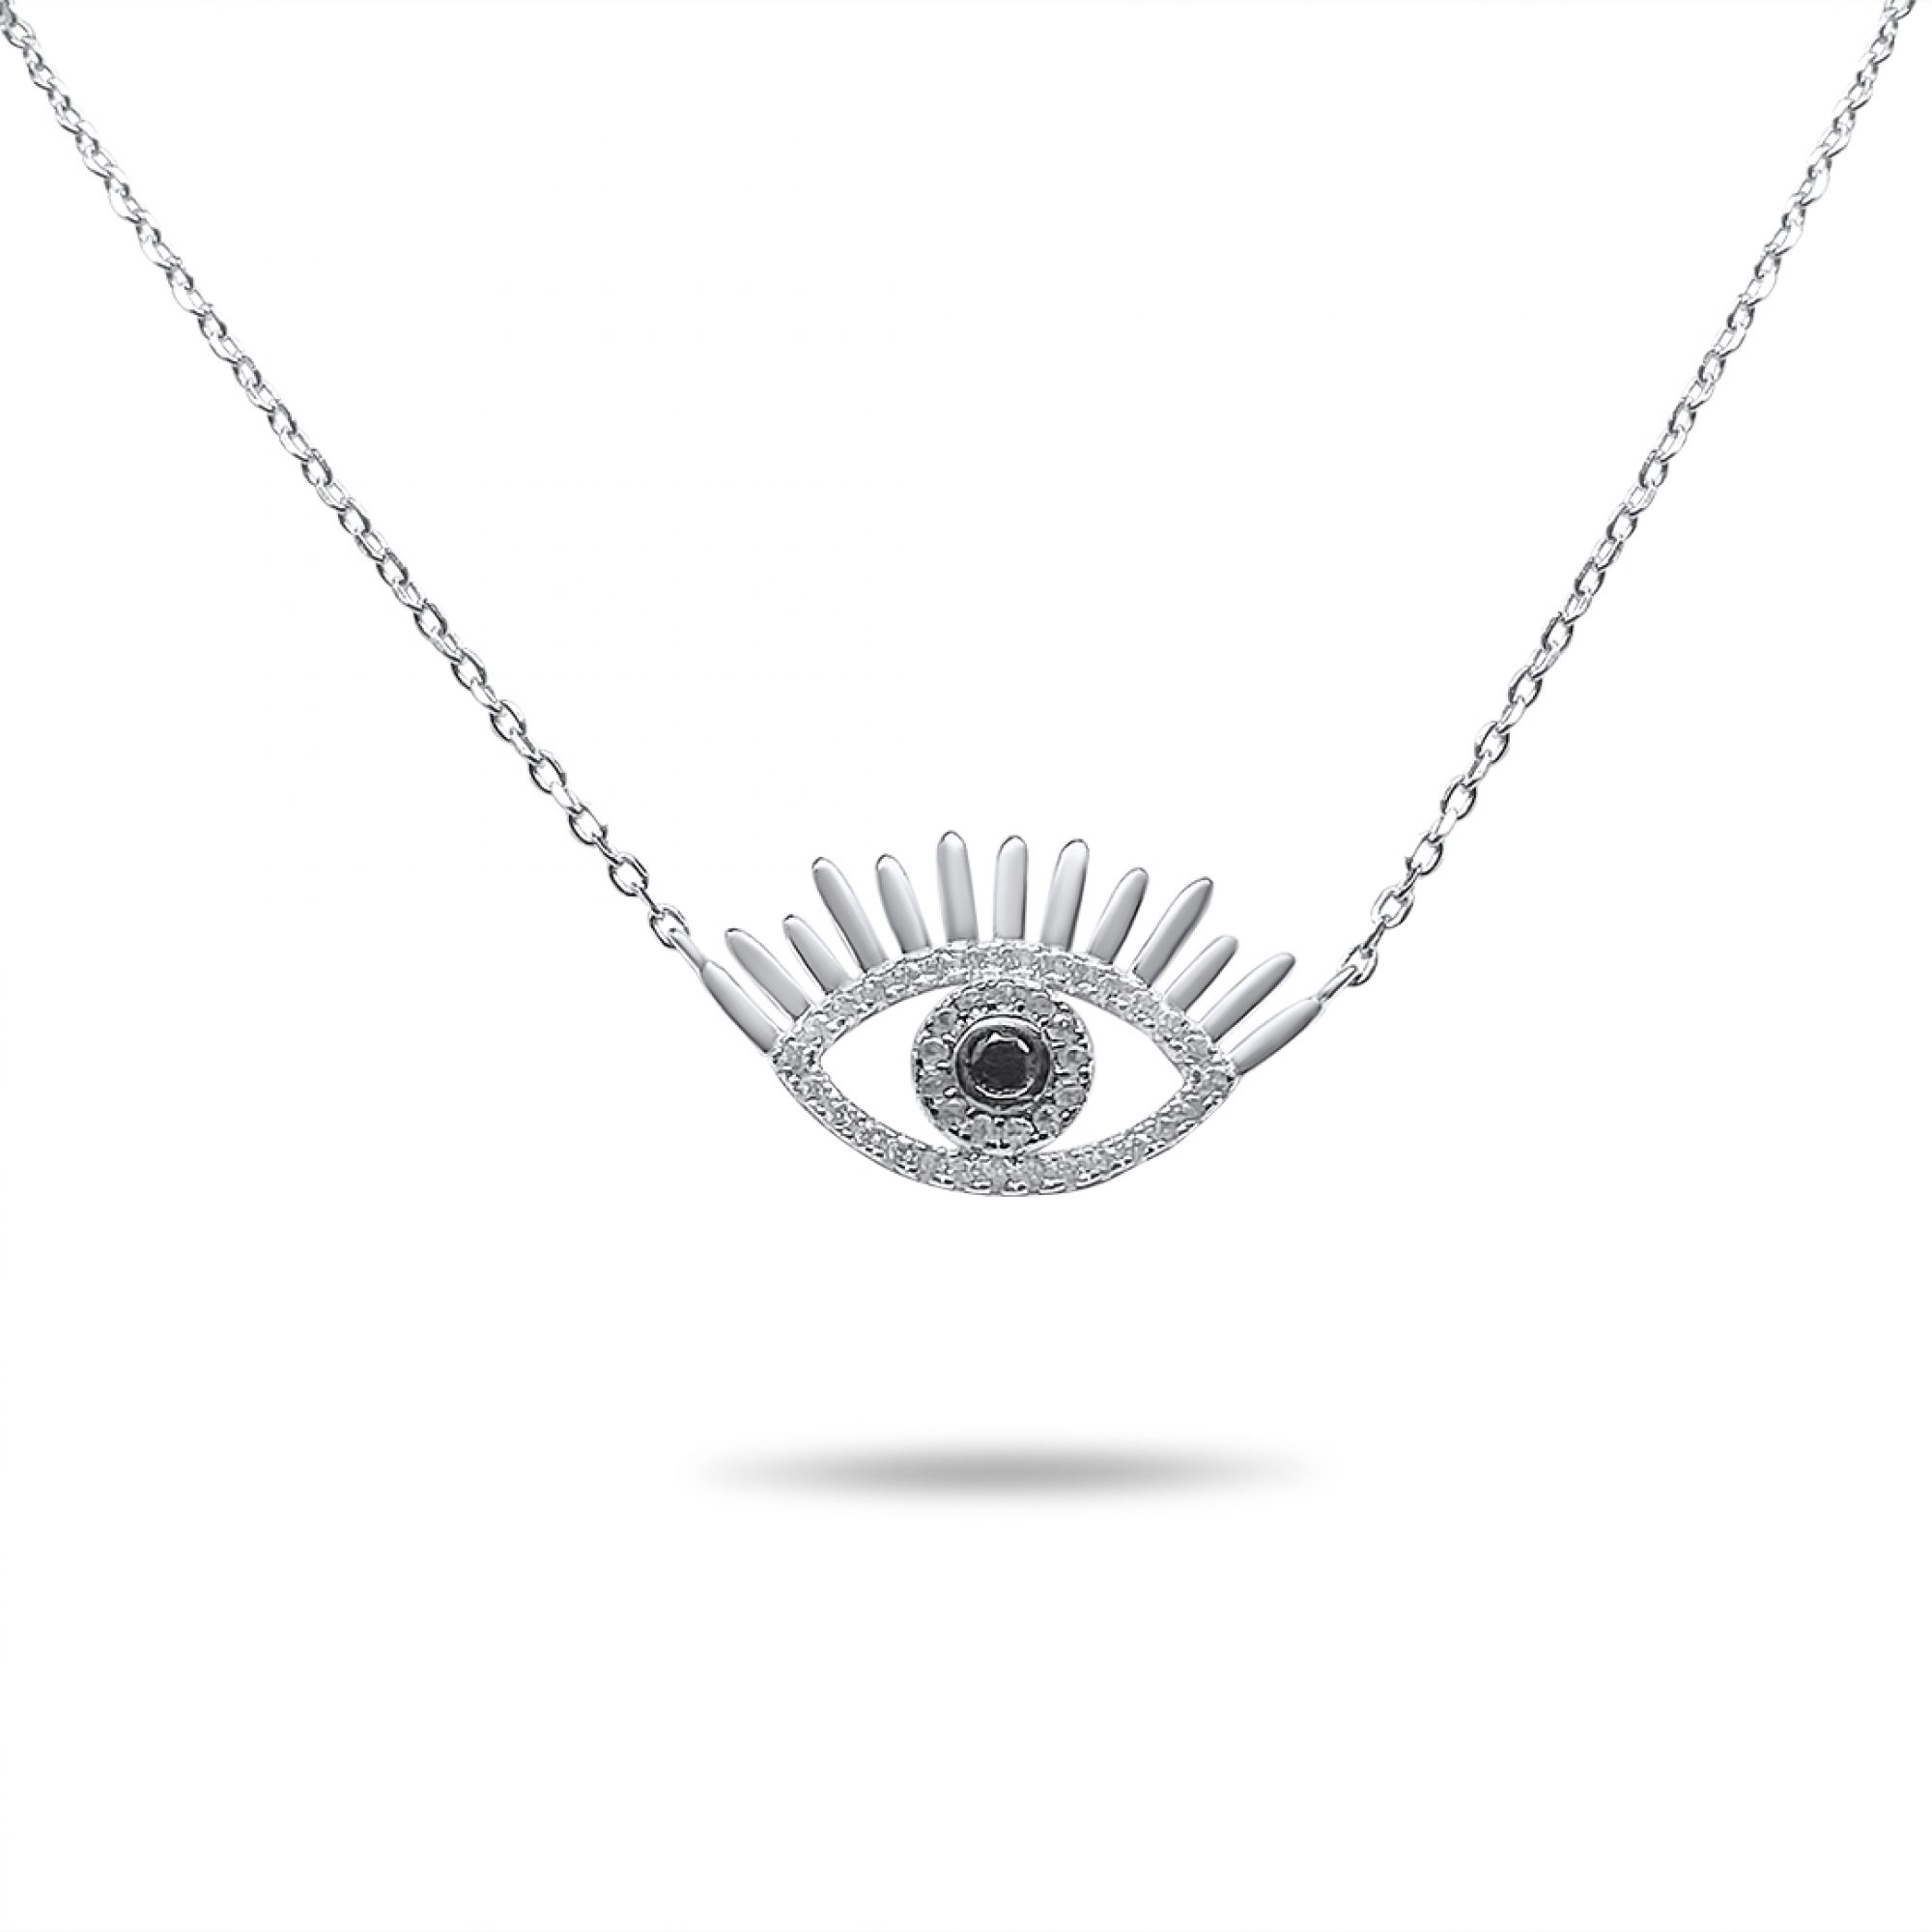 Eye necklace with zircon stones 